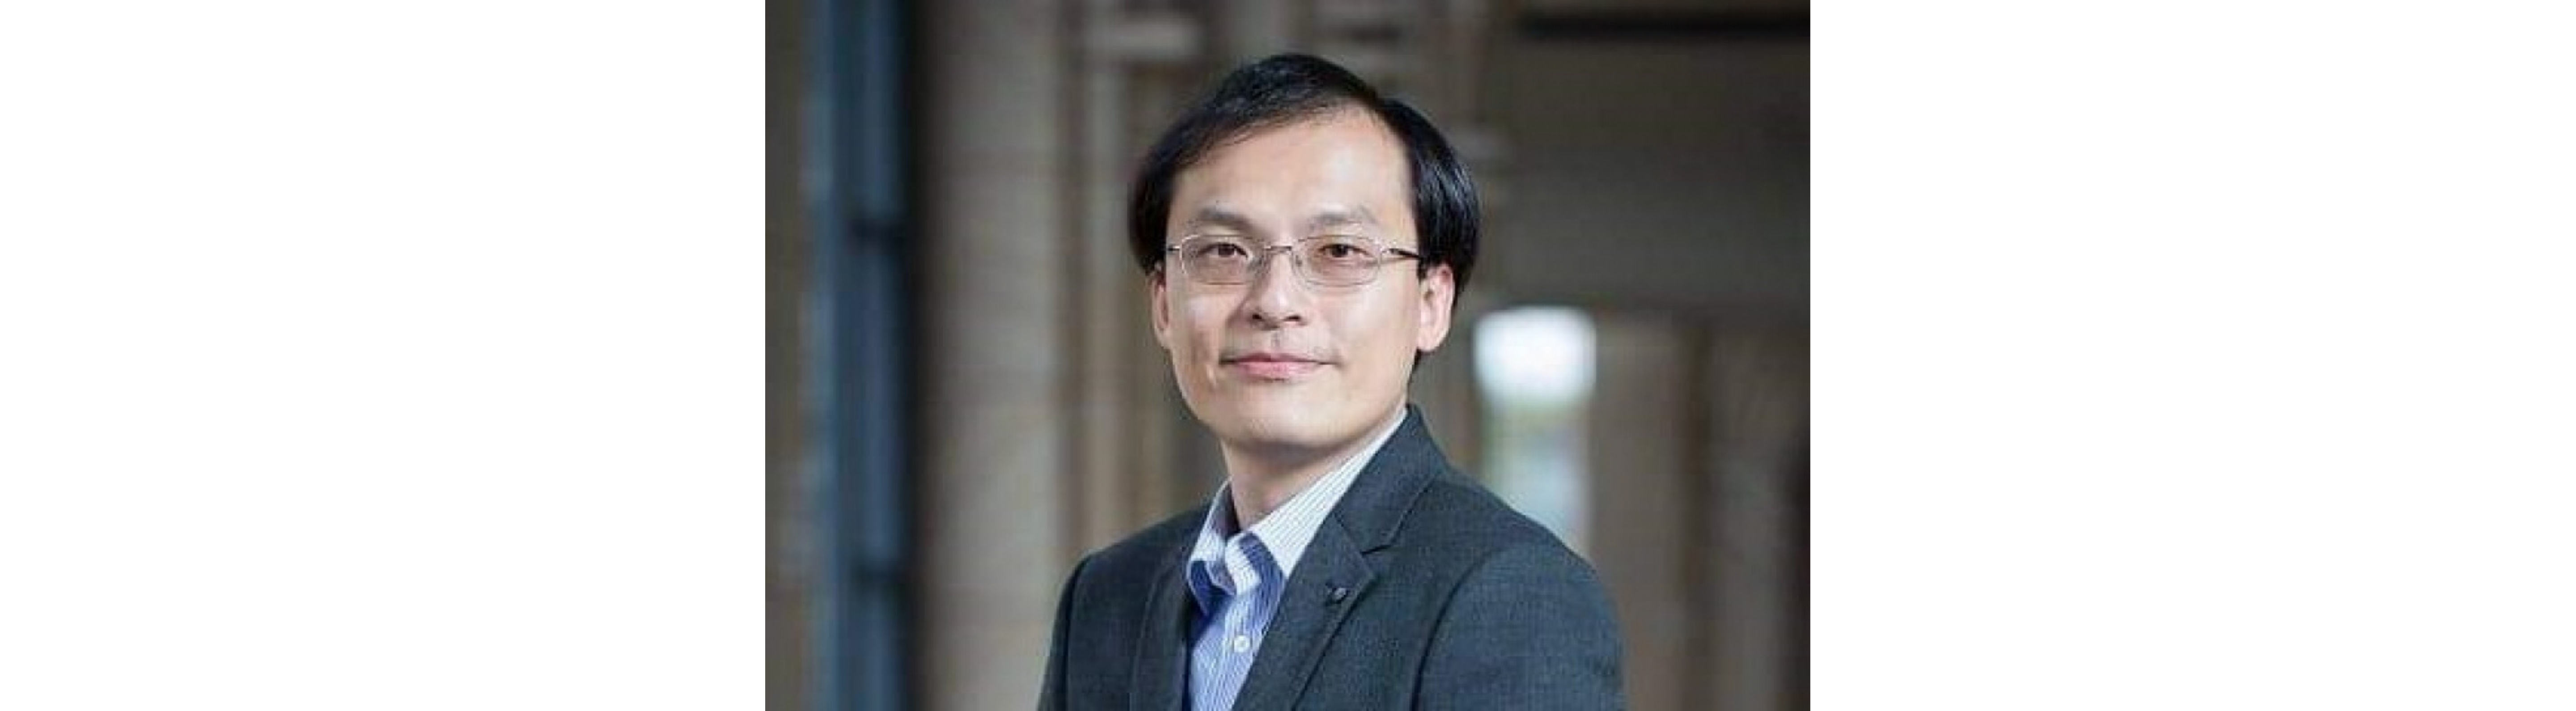 Alumni Kaleidoscope: Kelvin Yuen - Mphil(CIVL)